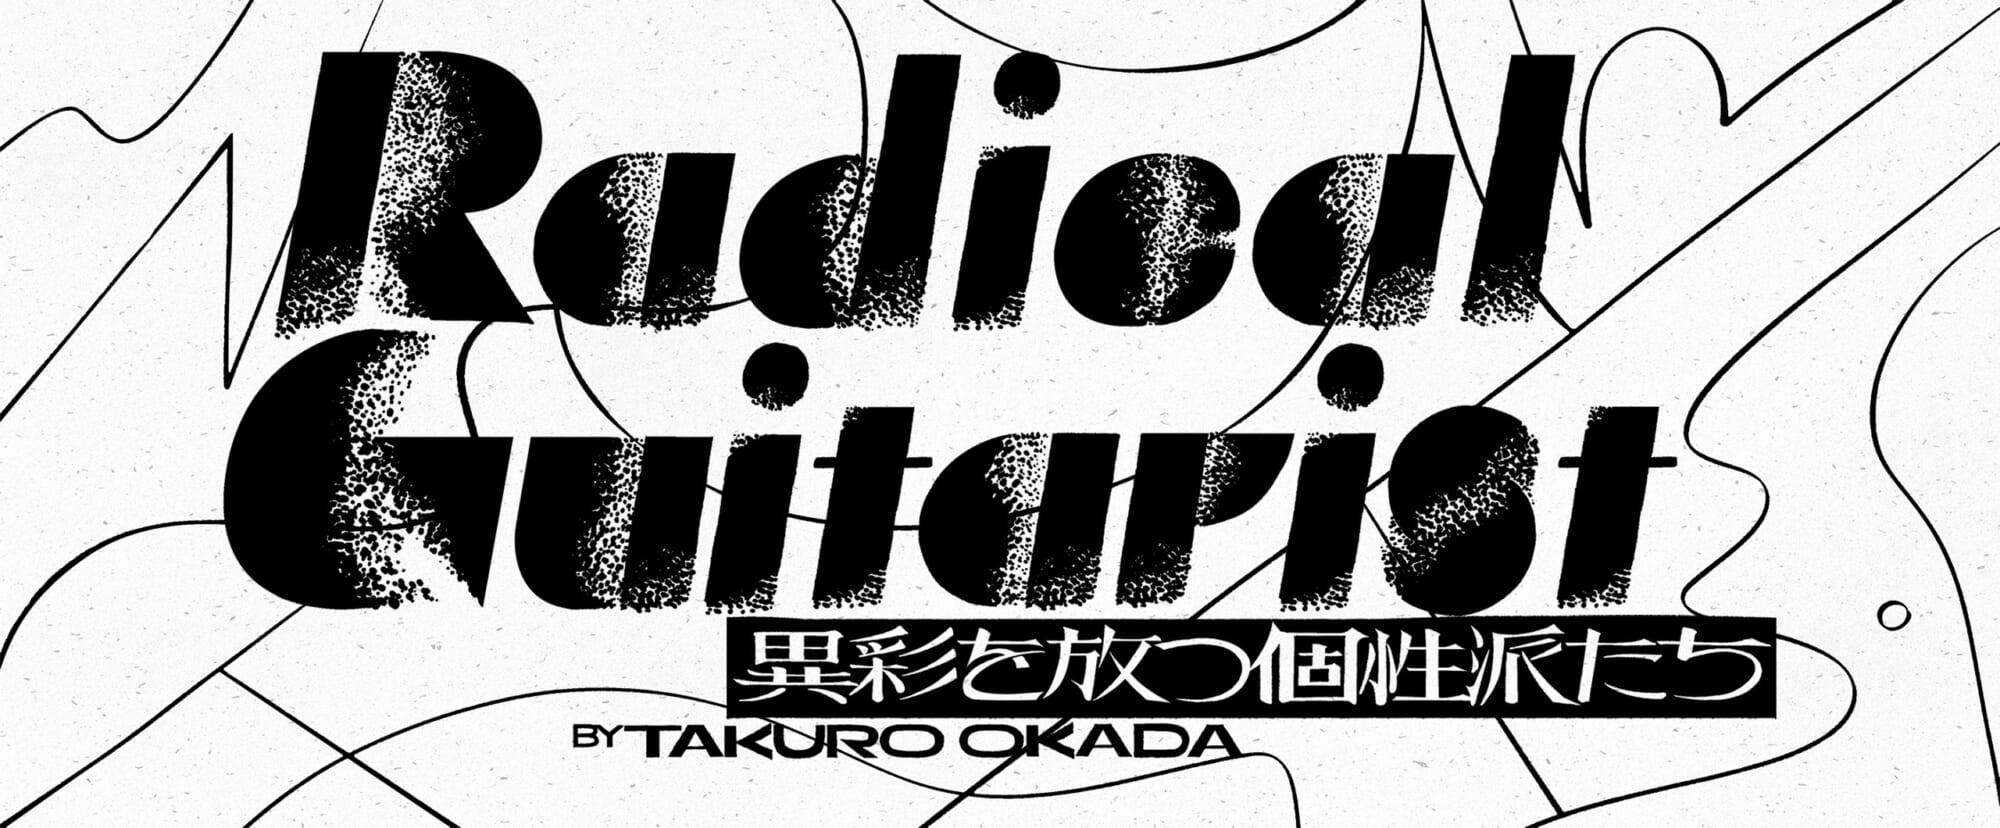 ラファエル・トラル『Sound Mind Sound Body』岡田拓郎の“Radical Guitarist”第9回